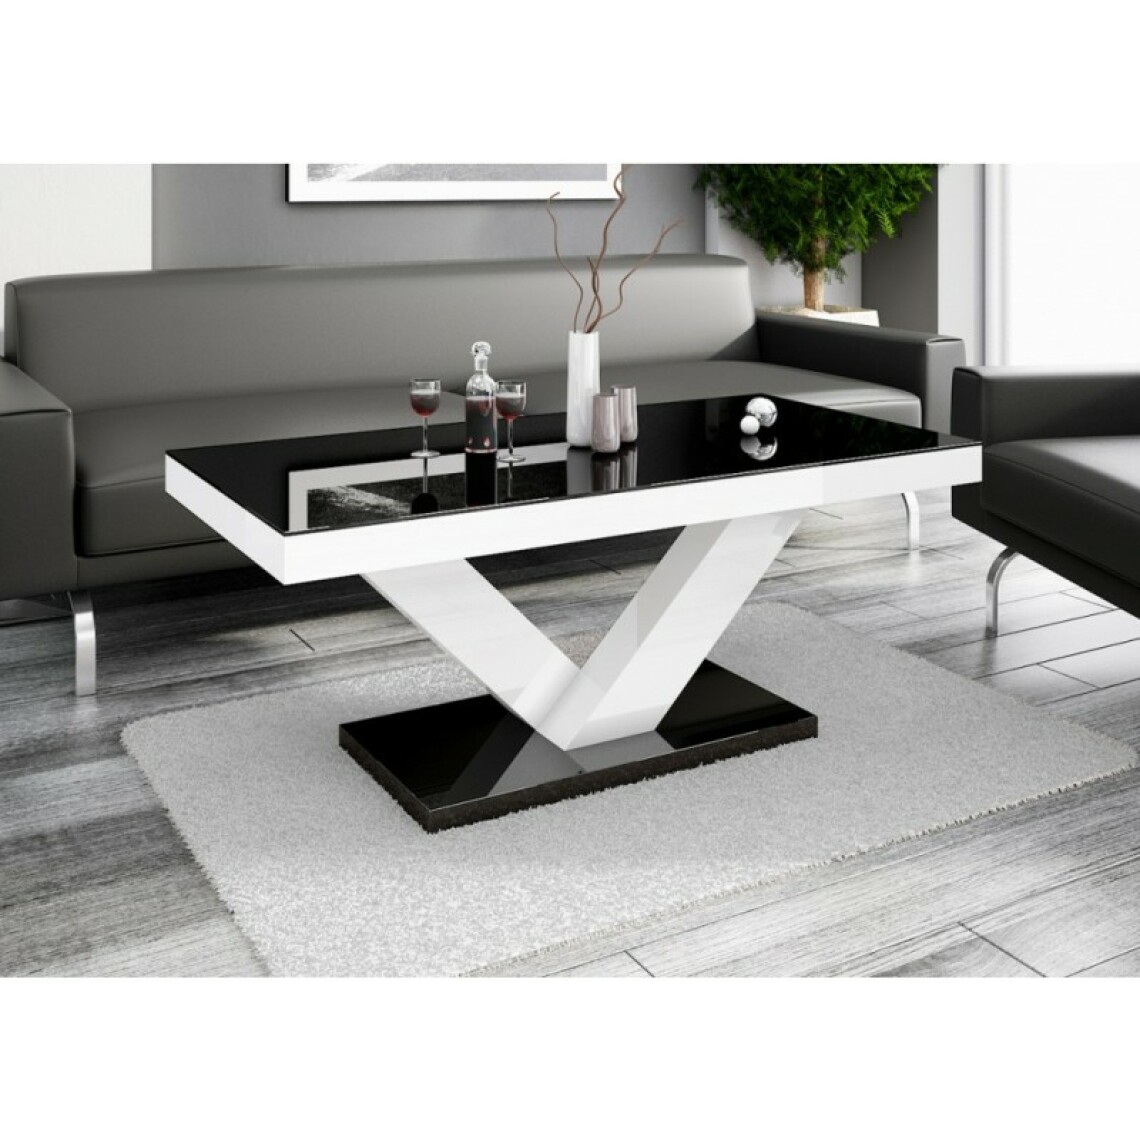 Carellia - Table basse design 120 cm x 60 cm x 49 cm - Noir / Blanc - Tables basses